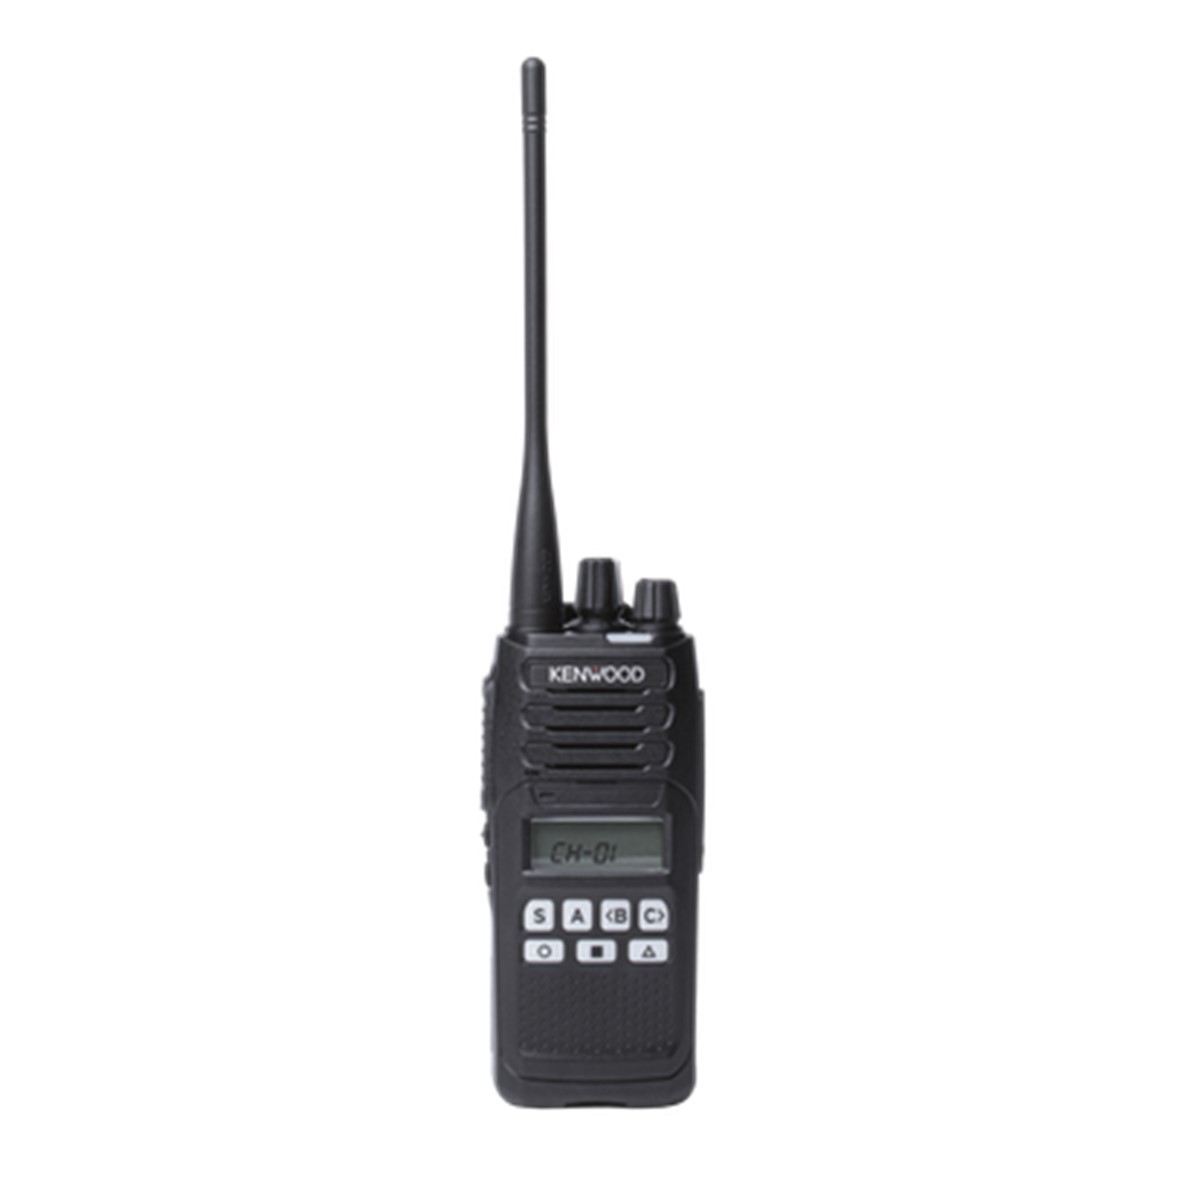 Radio KENWOOD NX-1300-DK2-IS Digital UHF 450-520 MHz con pantalla y teclado limitado intrinsecamente seguro